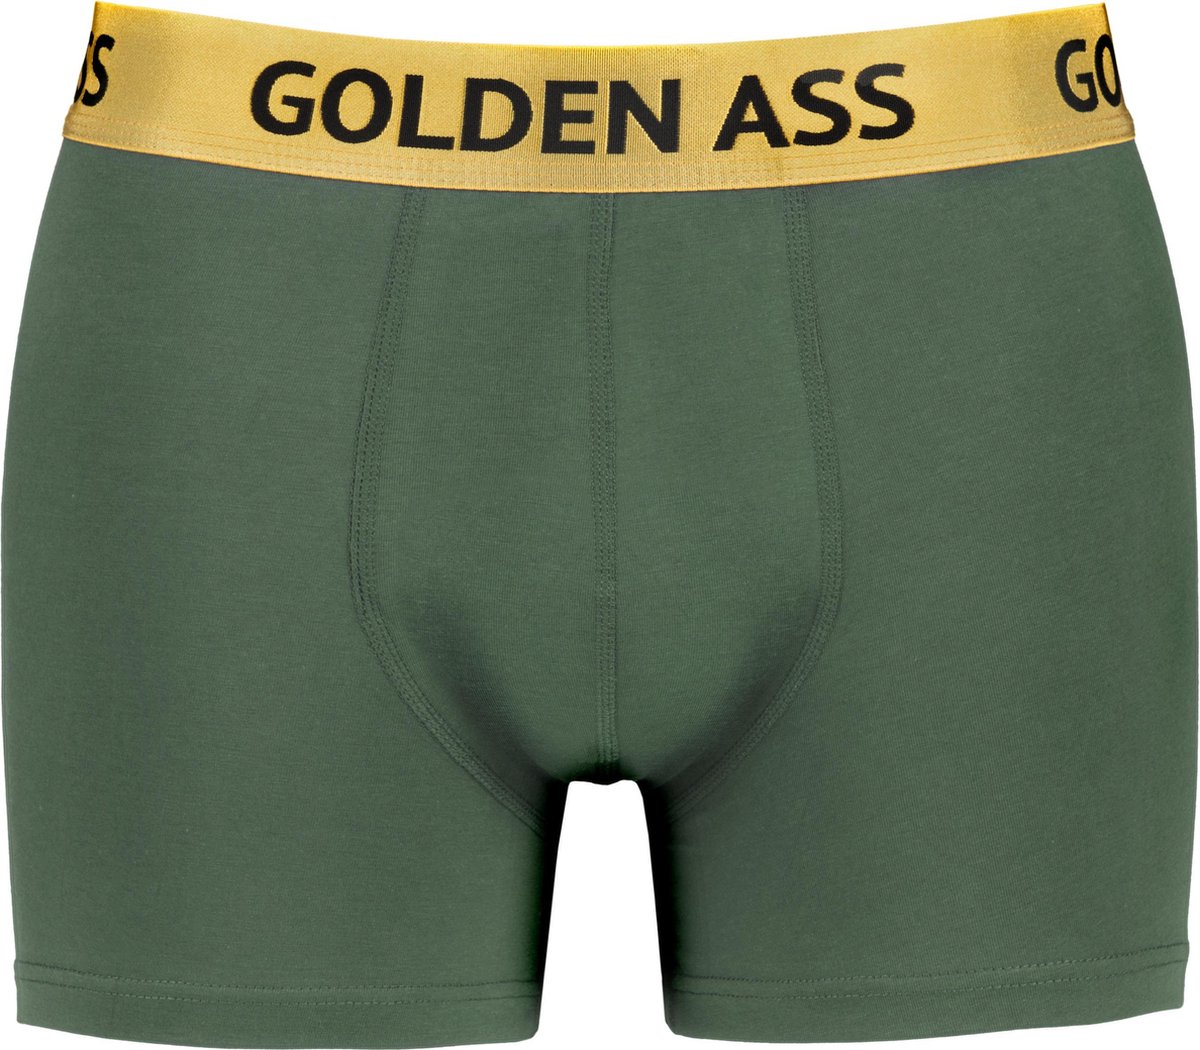 Golden Ass - Heren boxershort groen L